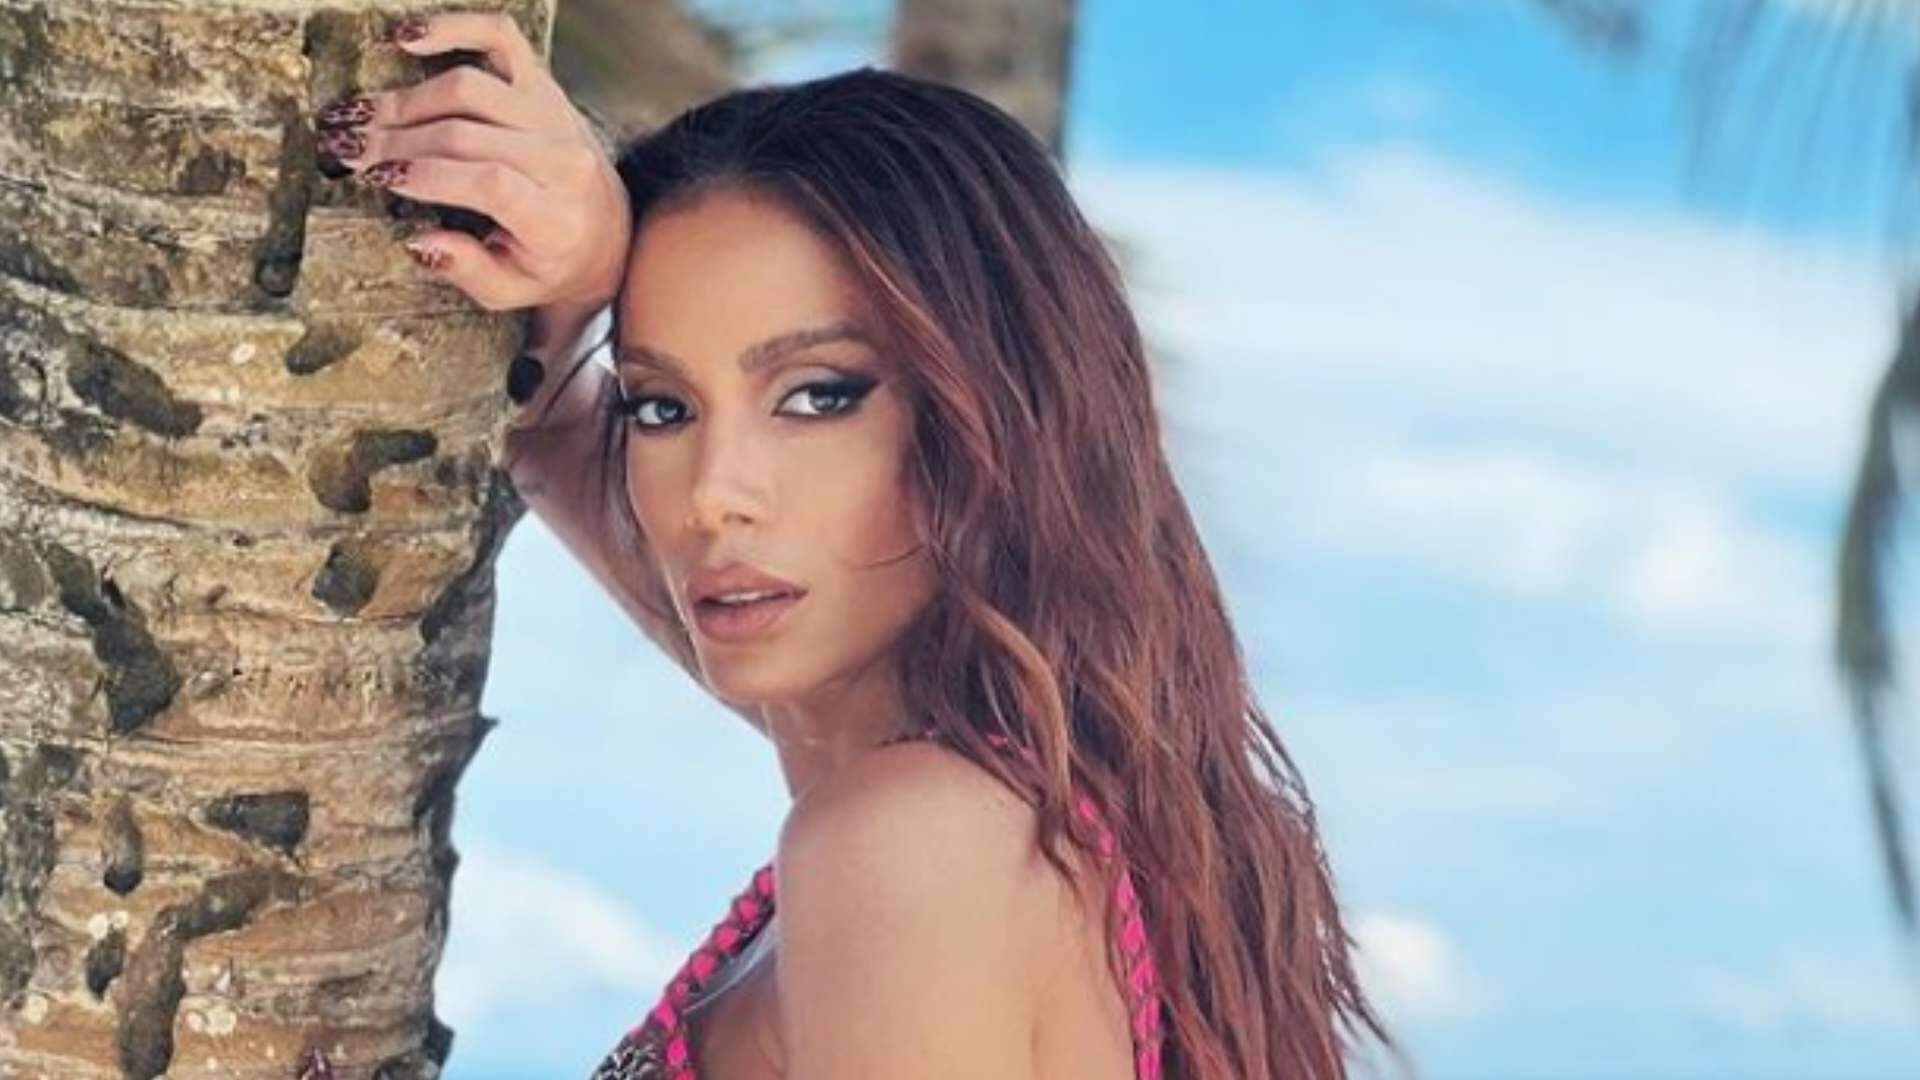 Anitta faz sucesso com coreografia de nova música e viraliza no TikTok: “Já aprendeu?” - Metropolitana FM